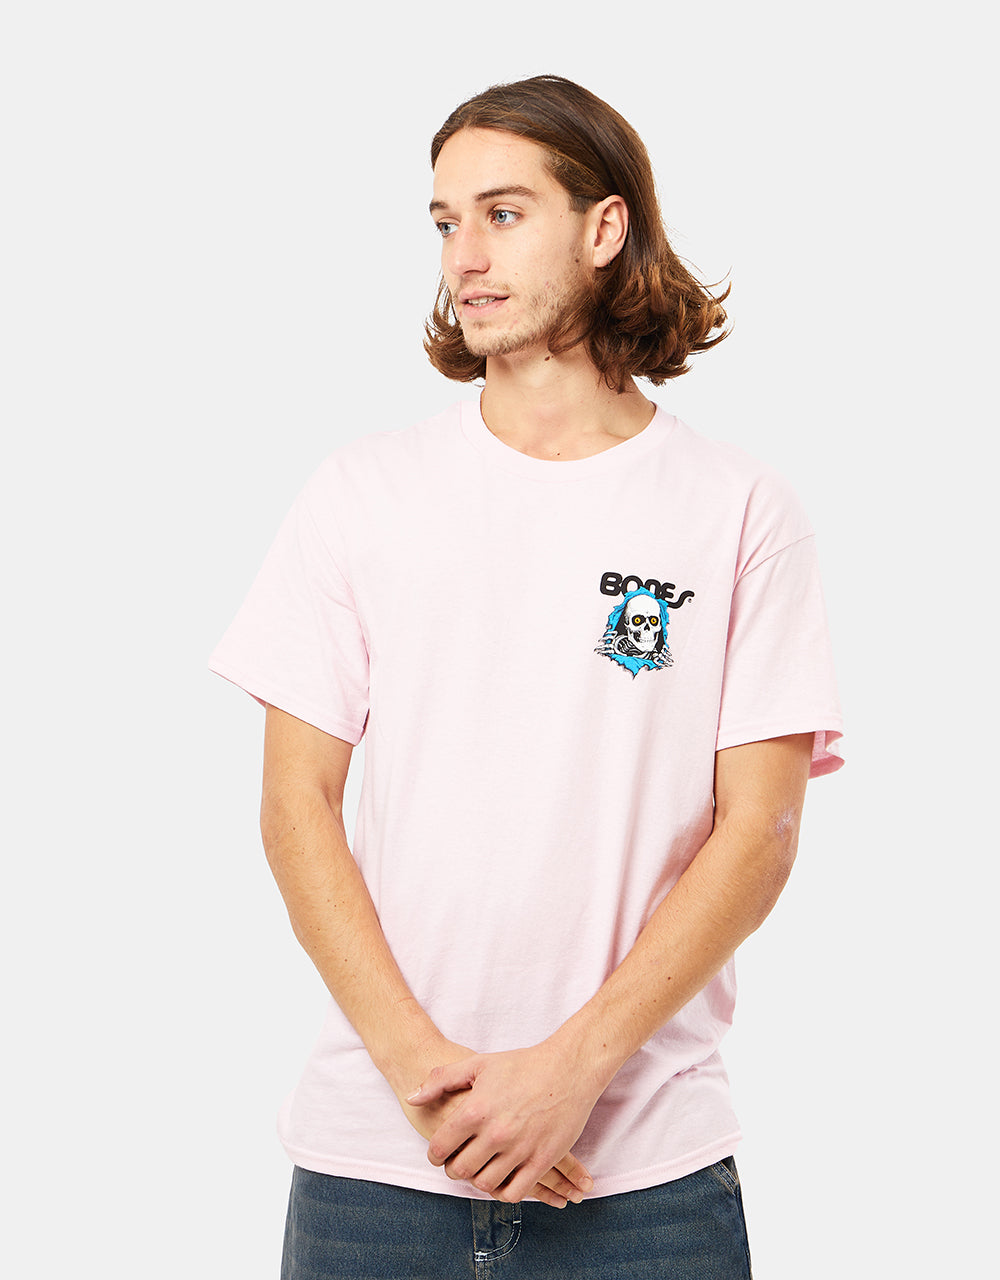 Powell Peralta Ripper T-Shirt - Light Pink